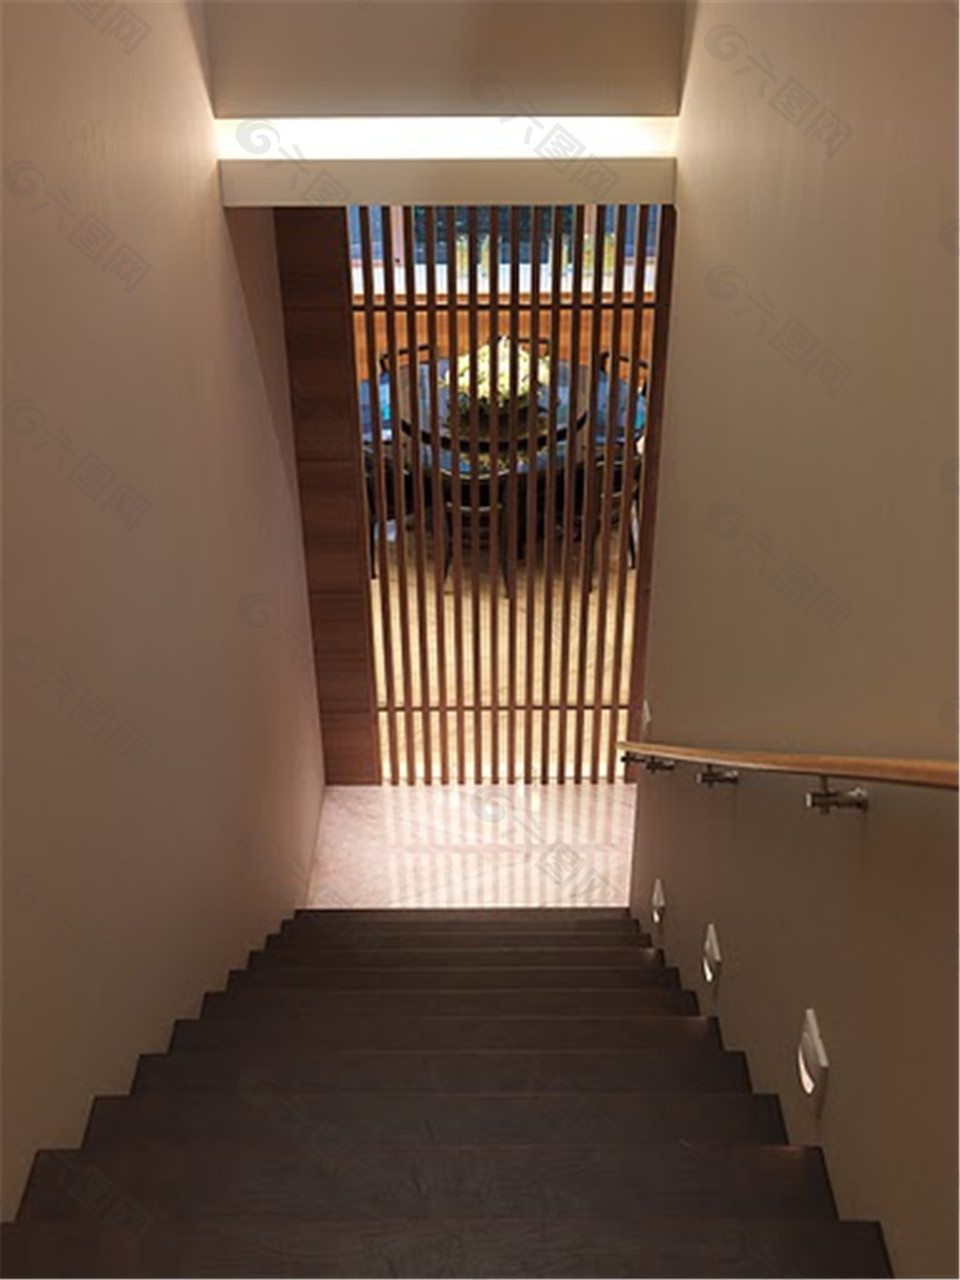 现代简约楼梯设计图